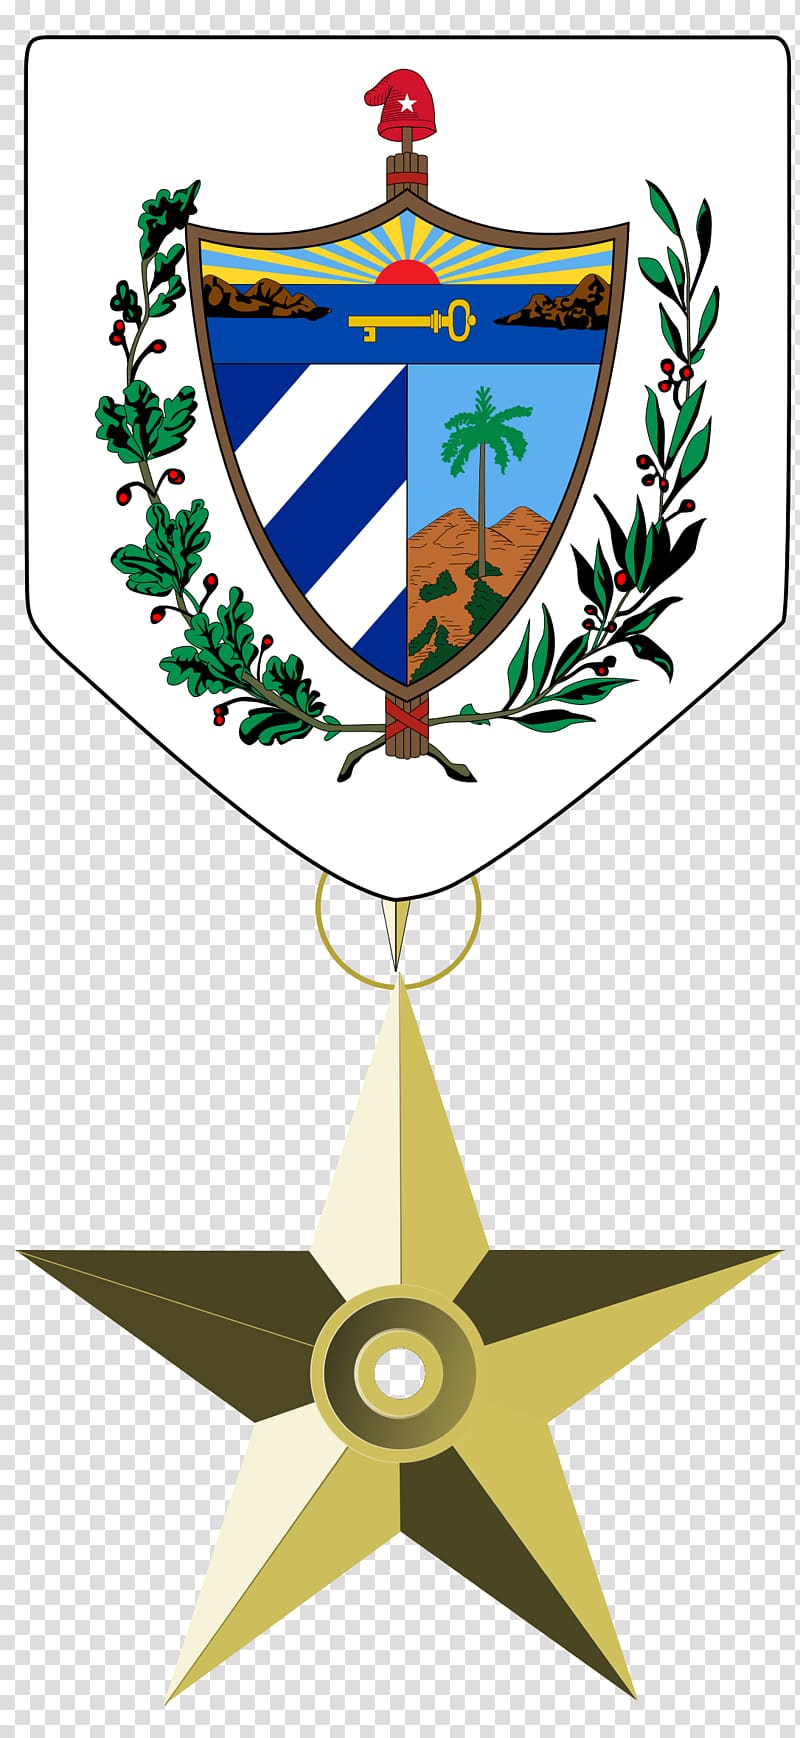 Coat of arms of Cuba Flag of Cuba National emblem, cuba transparent background PNG clipart